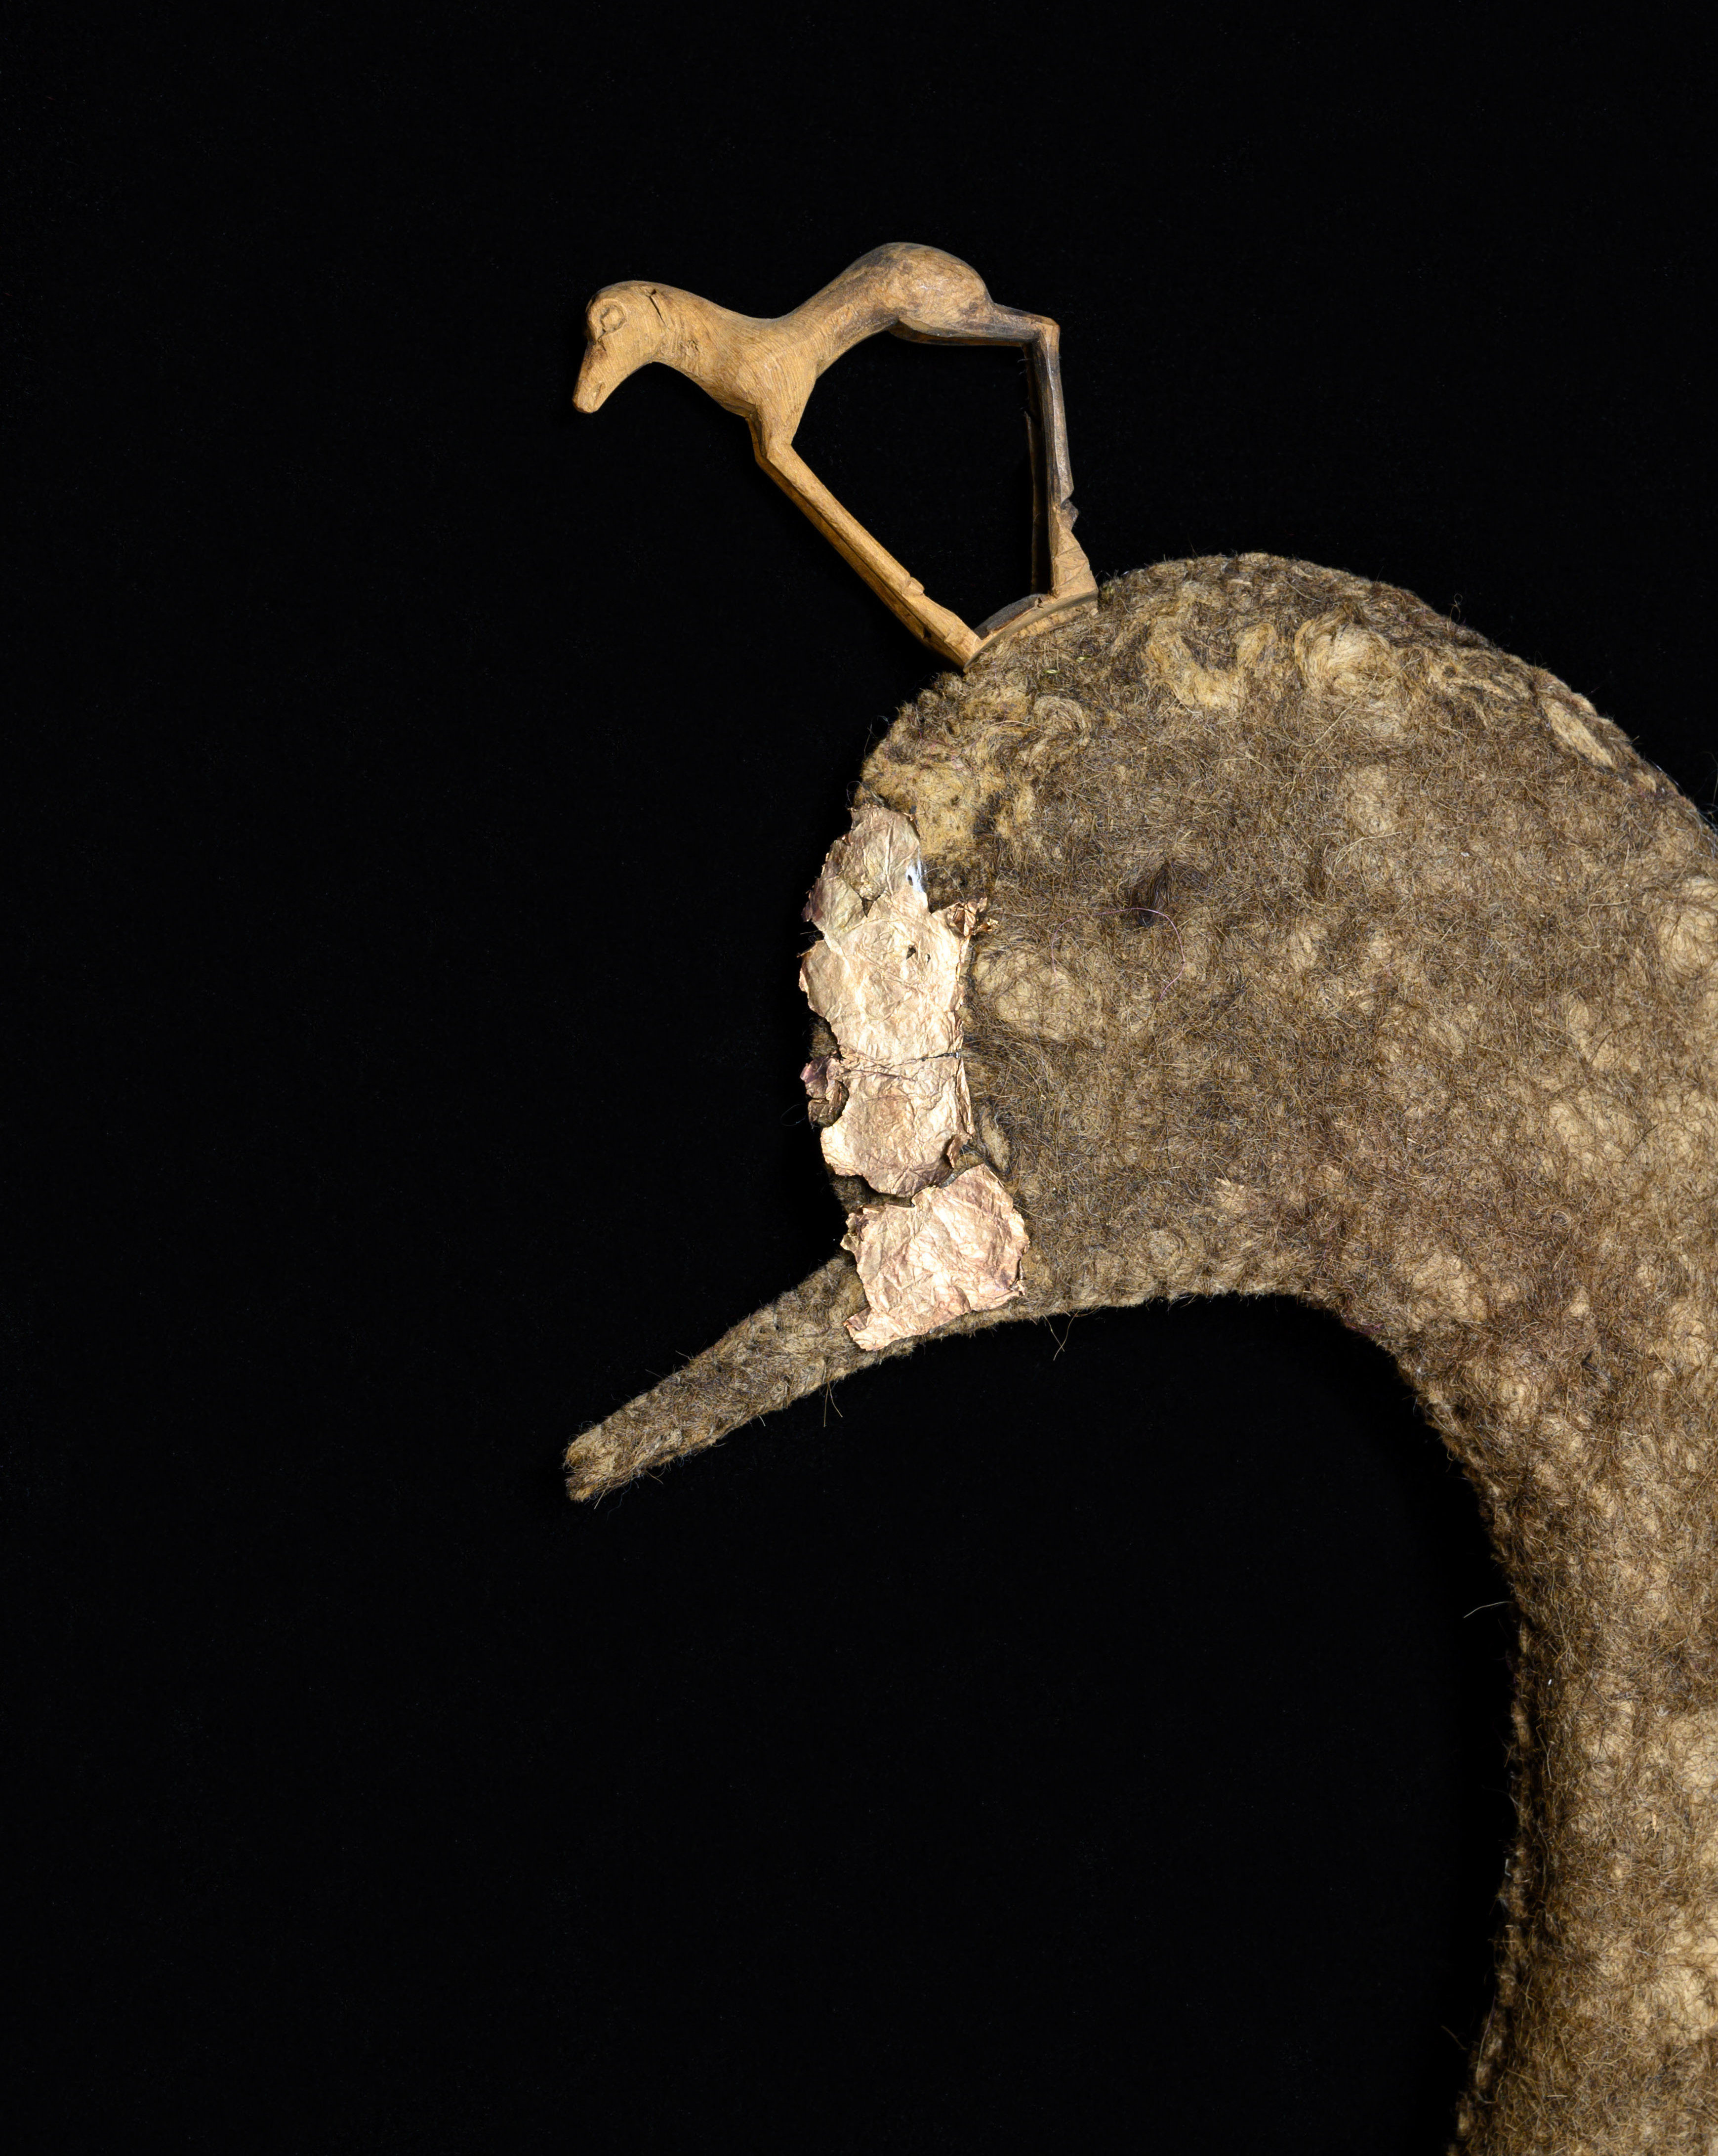 Das Bild zeigt einen Teil einer Filzmütze, die wie ein Entenkopf geformt ist, auf schwarzem Grund. Auf dem Entenkopf sieht man eine filigrane Holzfigur in Pferdedorm.